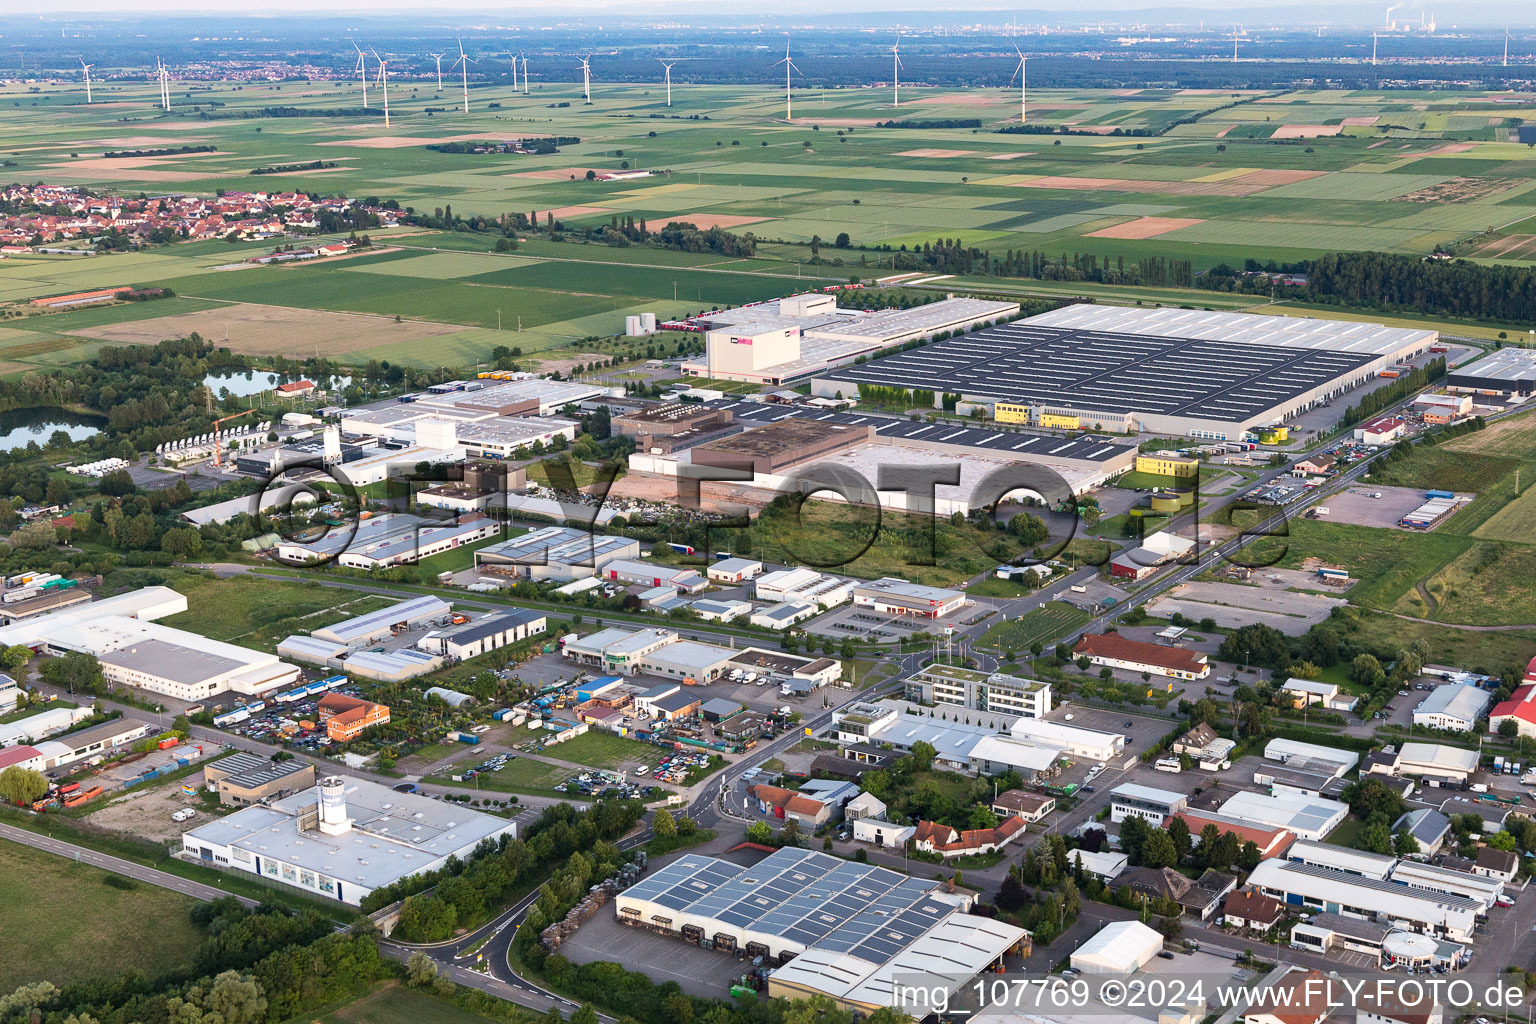 Vue aérienne de Zone industrielle et commerciale à Offenbach an der Queich dans le département Rhénanie-Palatinat, Allemagne